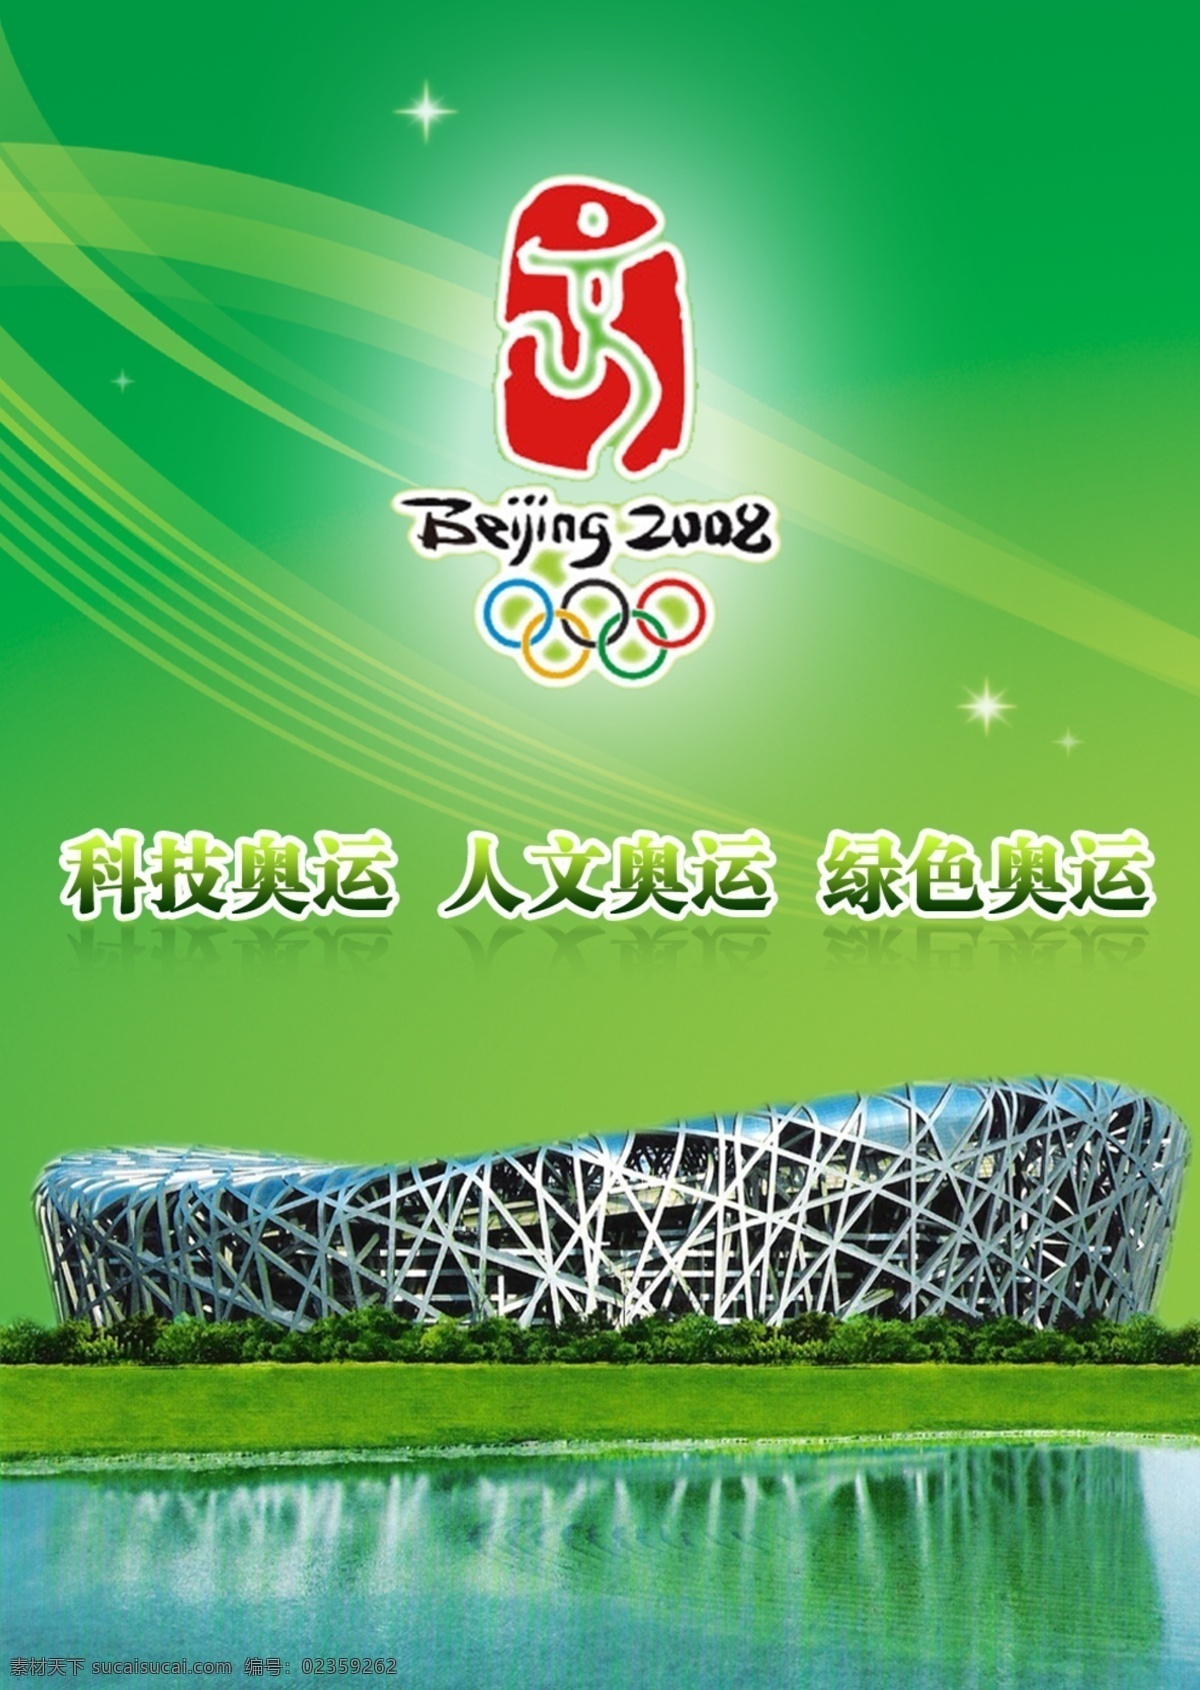 2008 北京 奥运 北京奥运 科技 人文 绿色 鸟巢 印章 广告设计模板 源文件